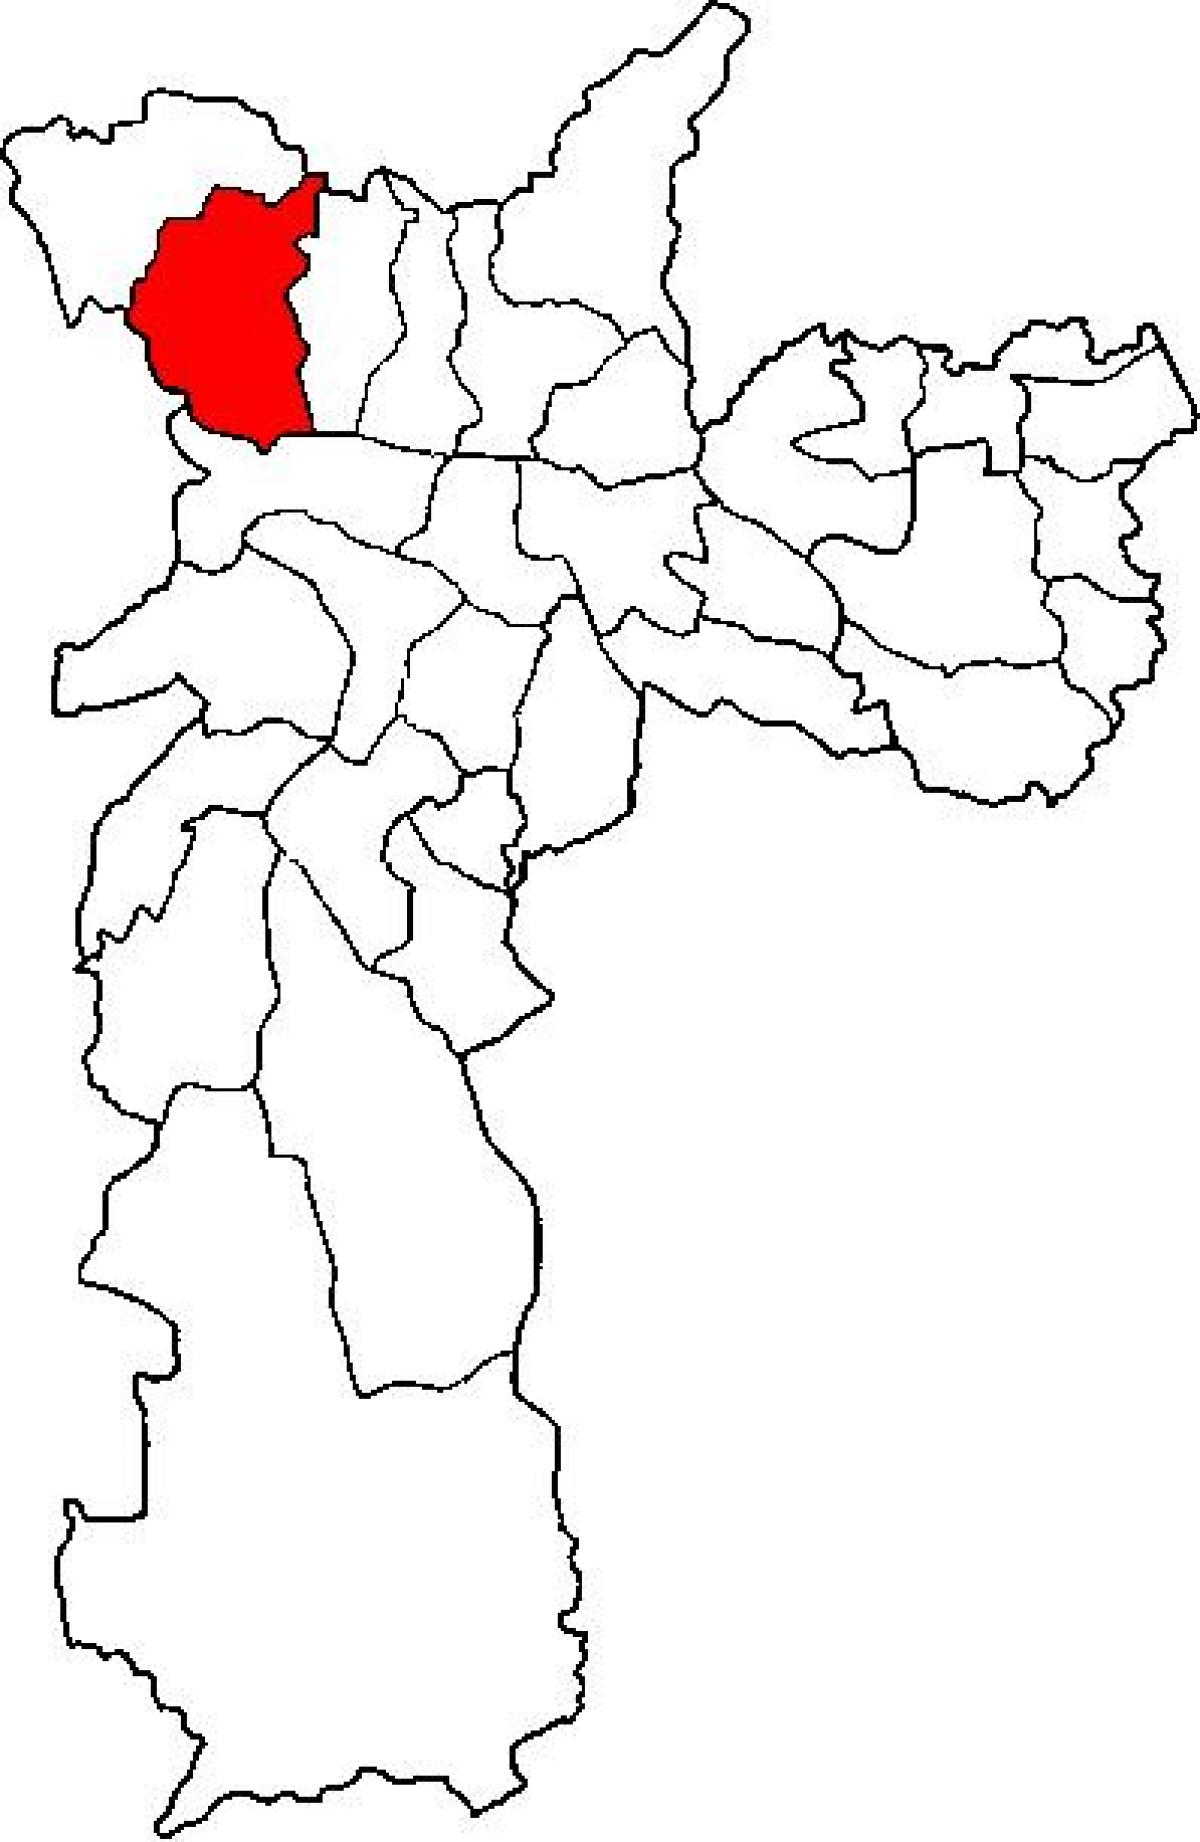 Mapa de Pirituba-Jaraguá sub-prefectura de São Paulo